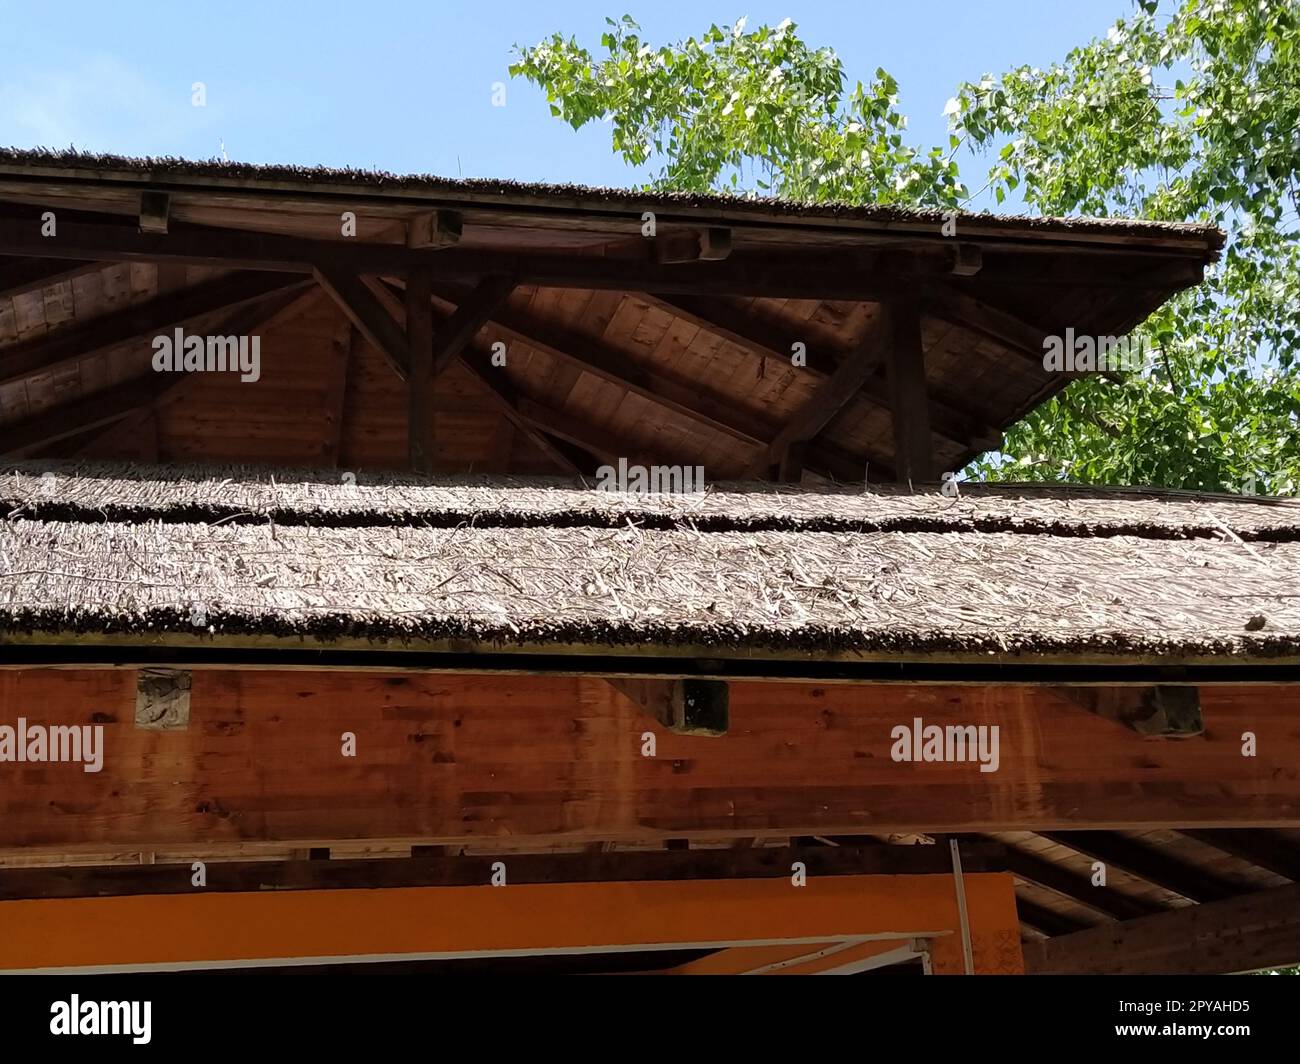 Reeddach in einem modernen Holzgebäude. Das Dach besteht aus umweltfreundlichen natürlichen Materialien wie Schilf oder Stroh. Beschichtung für Feuergefahr durch Reed-Beschichtung Stockfoto